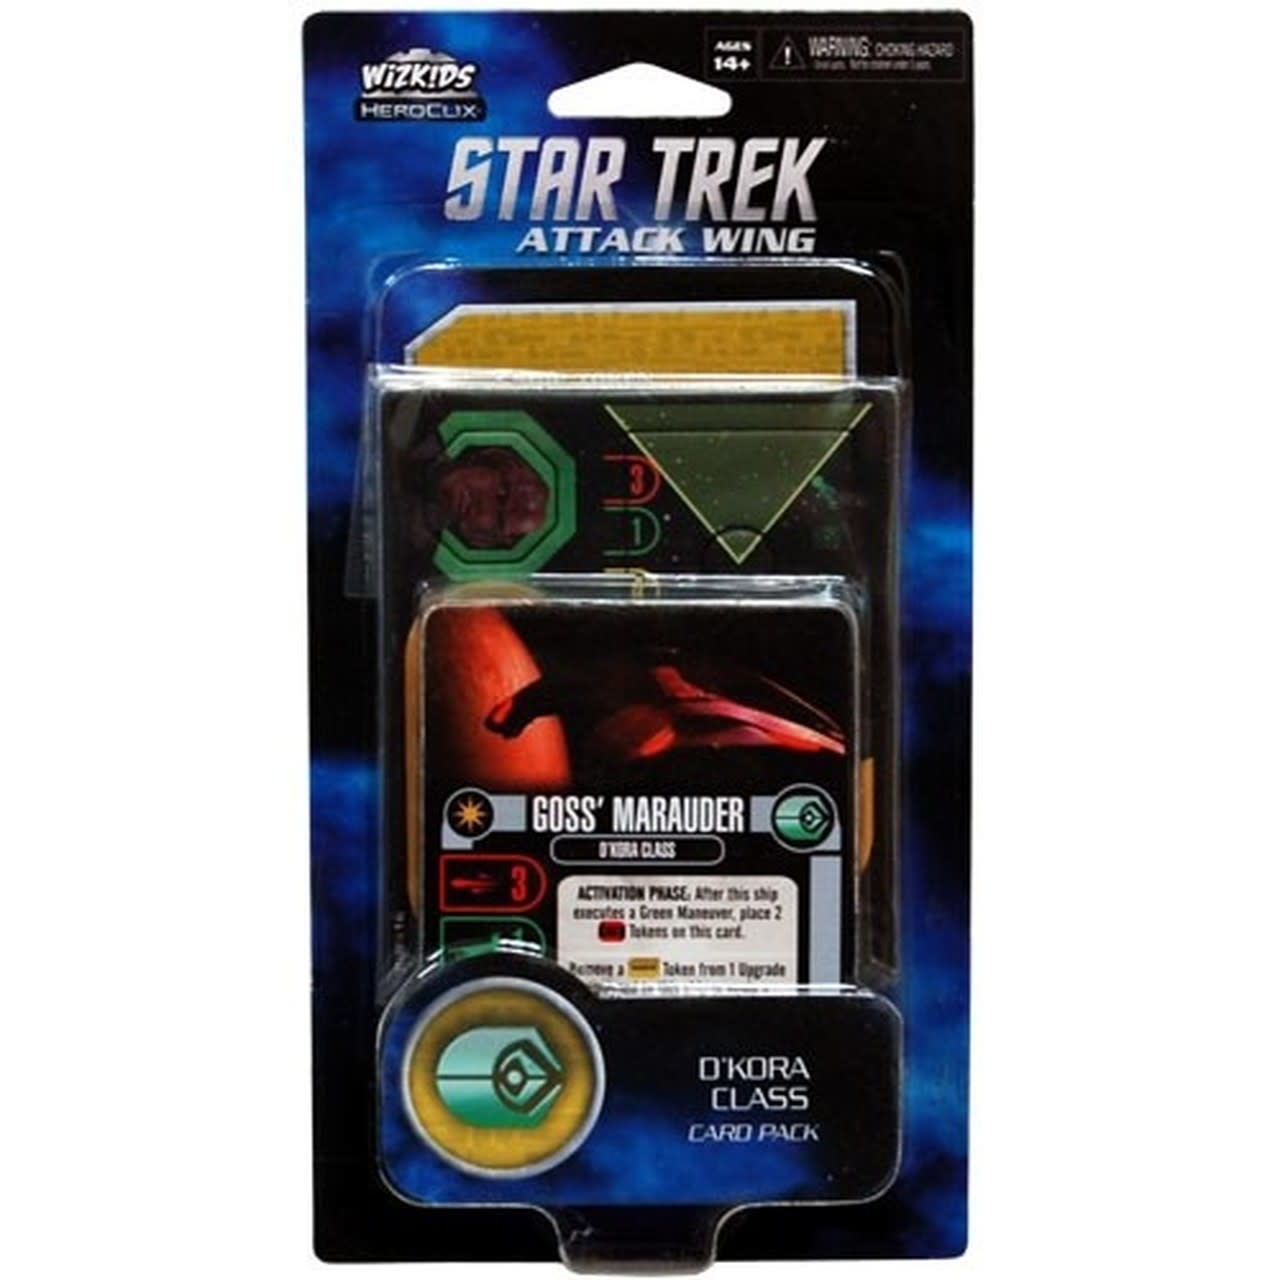 D'Kora Class Card Pack Star Trek Attack Wing 